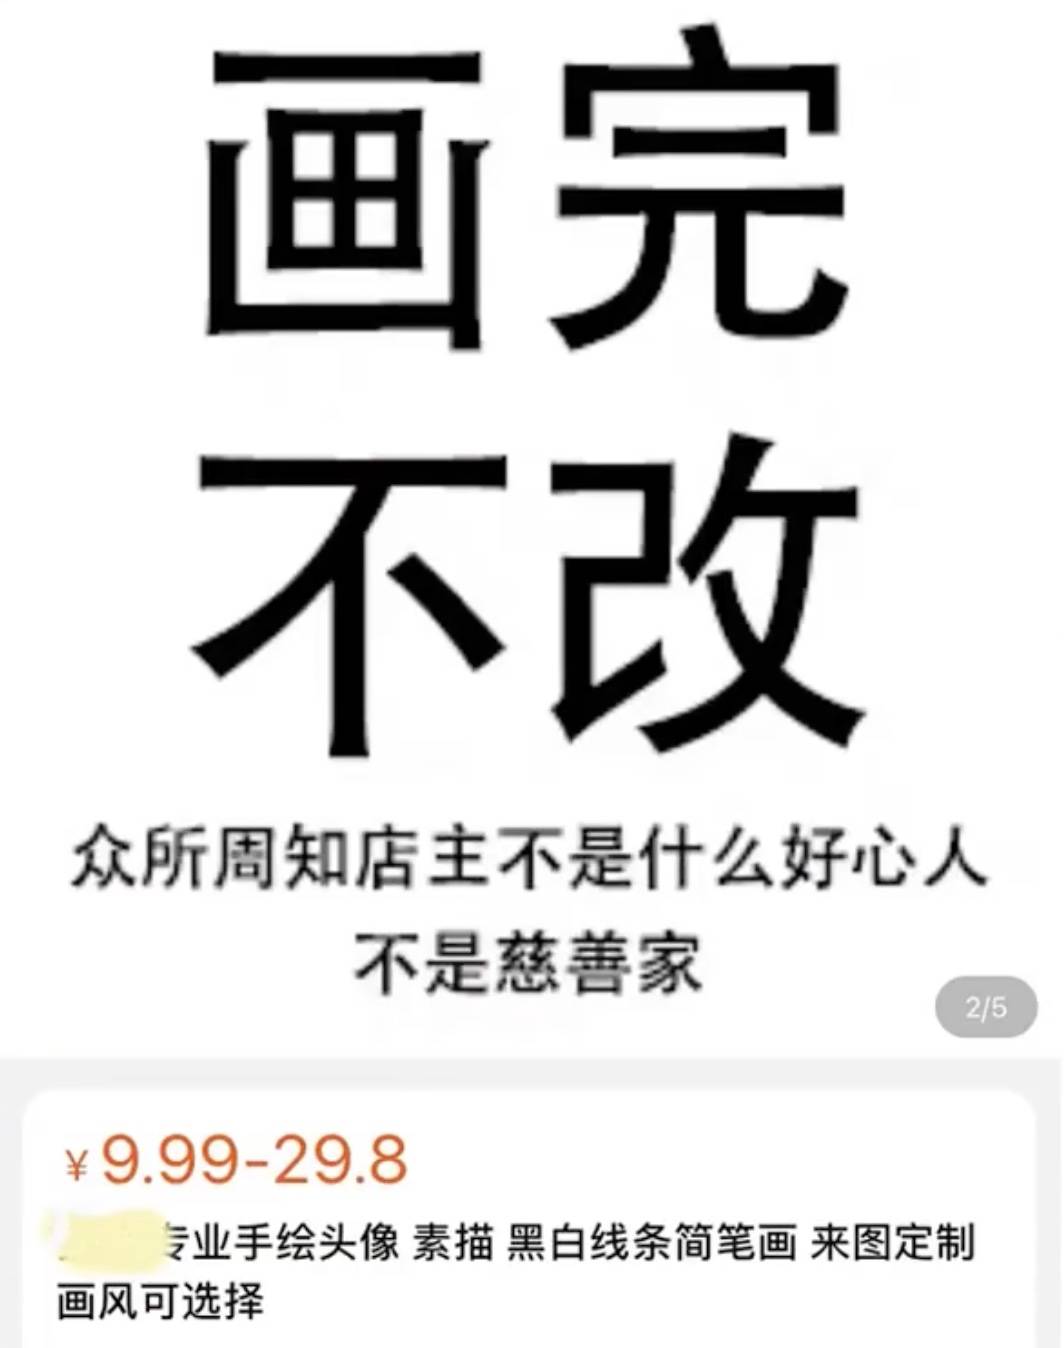 134 1 - Il primo giorno delle sculture di sabbia di Taobao è qui e la mia fonte di felicità sta spruzzando